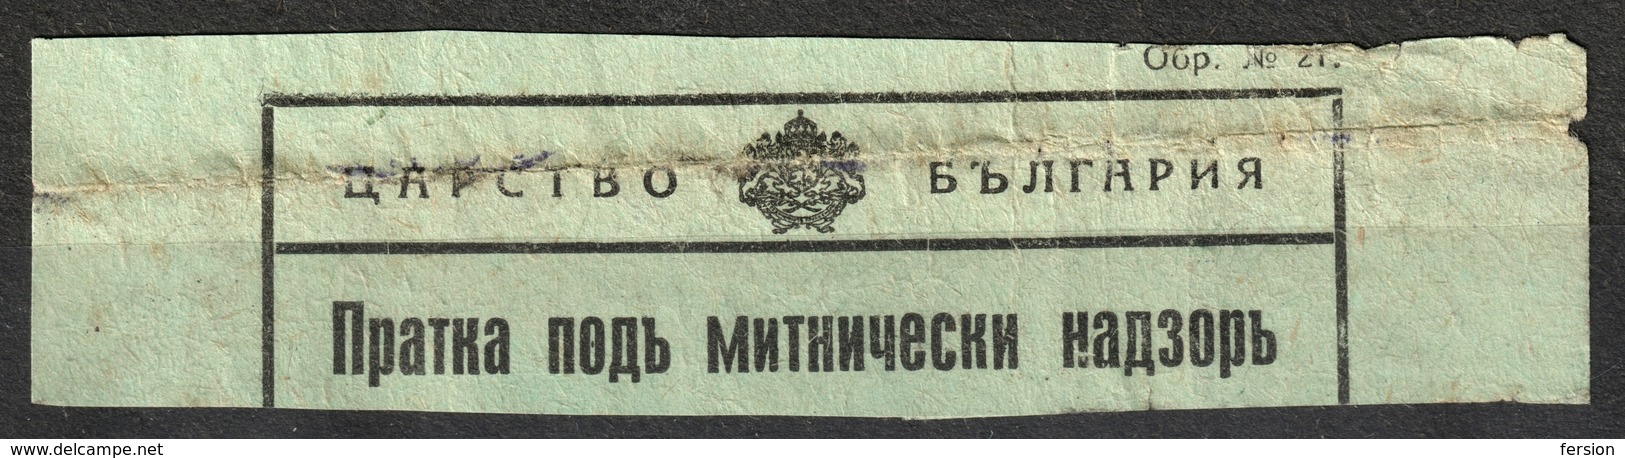 BULGARIA 1930's - Railway Customs Declaration - DÉCLARATION EN DOUANE / LABEL VIGNETTE - Used - Dienstzegels